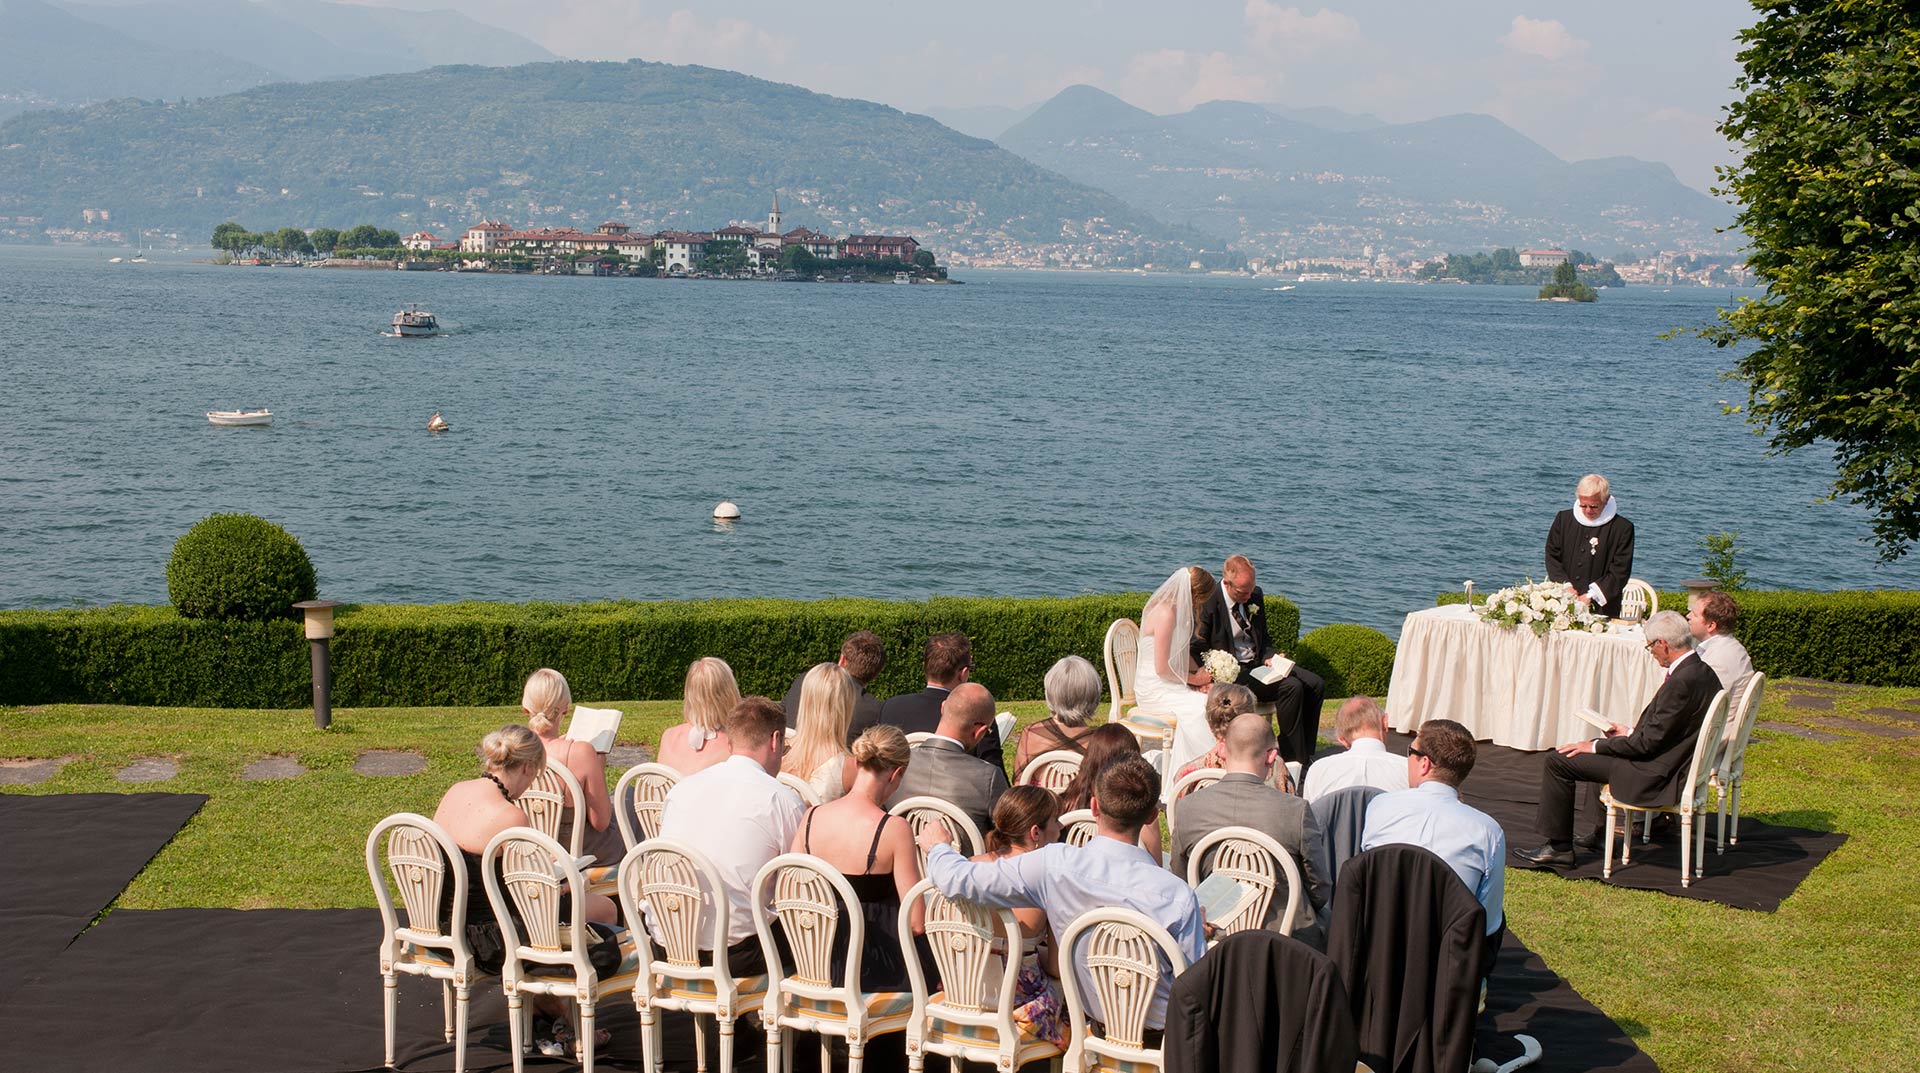 Protestant Wedding Ceremony in Stresa lake Maggiore